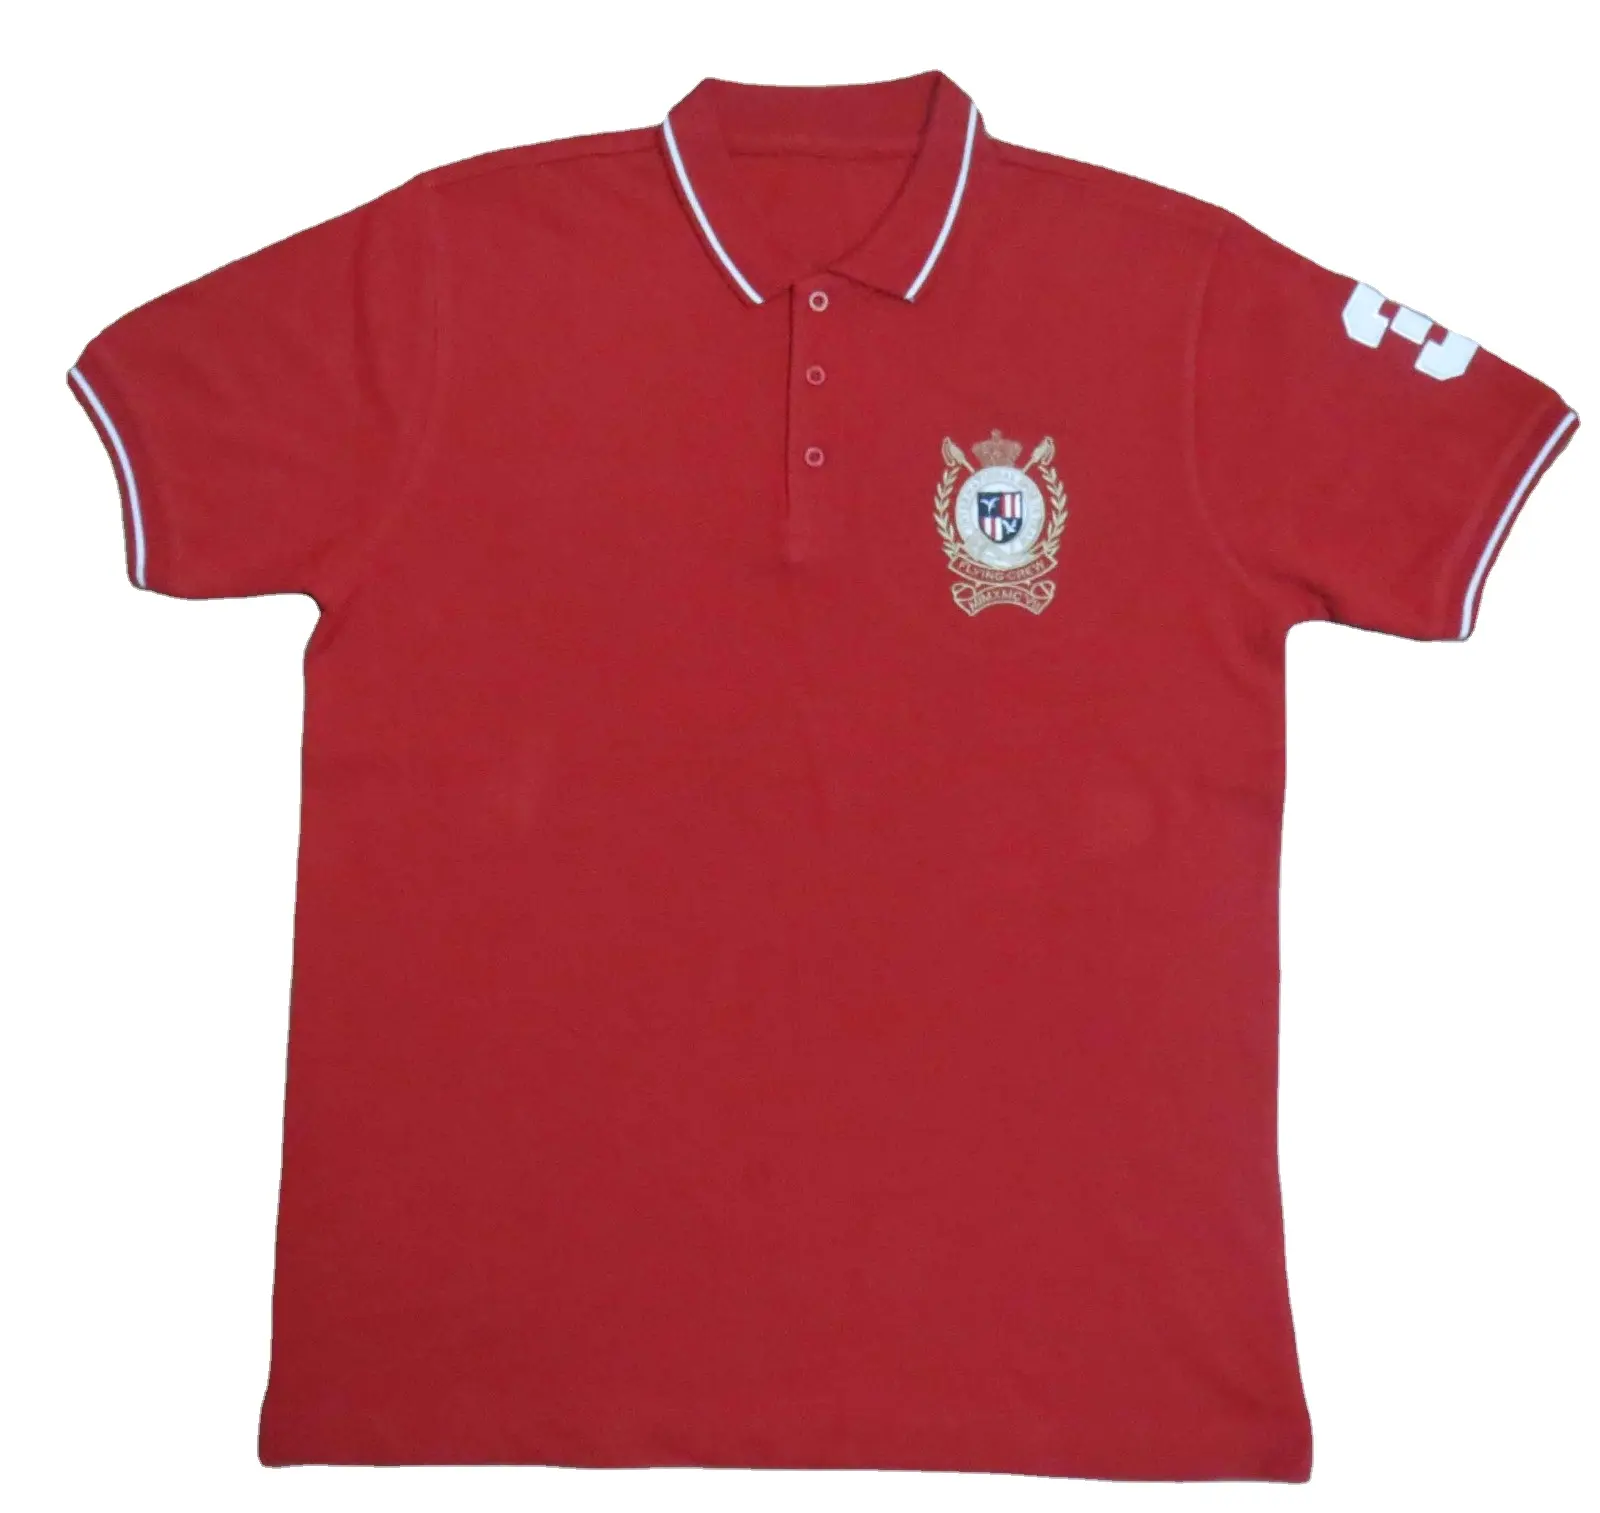 Kaus Polo Pique pria polos Golf polos seragam kustom kasual katun kualitas tinggi